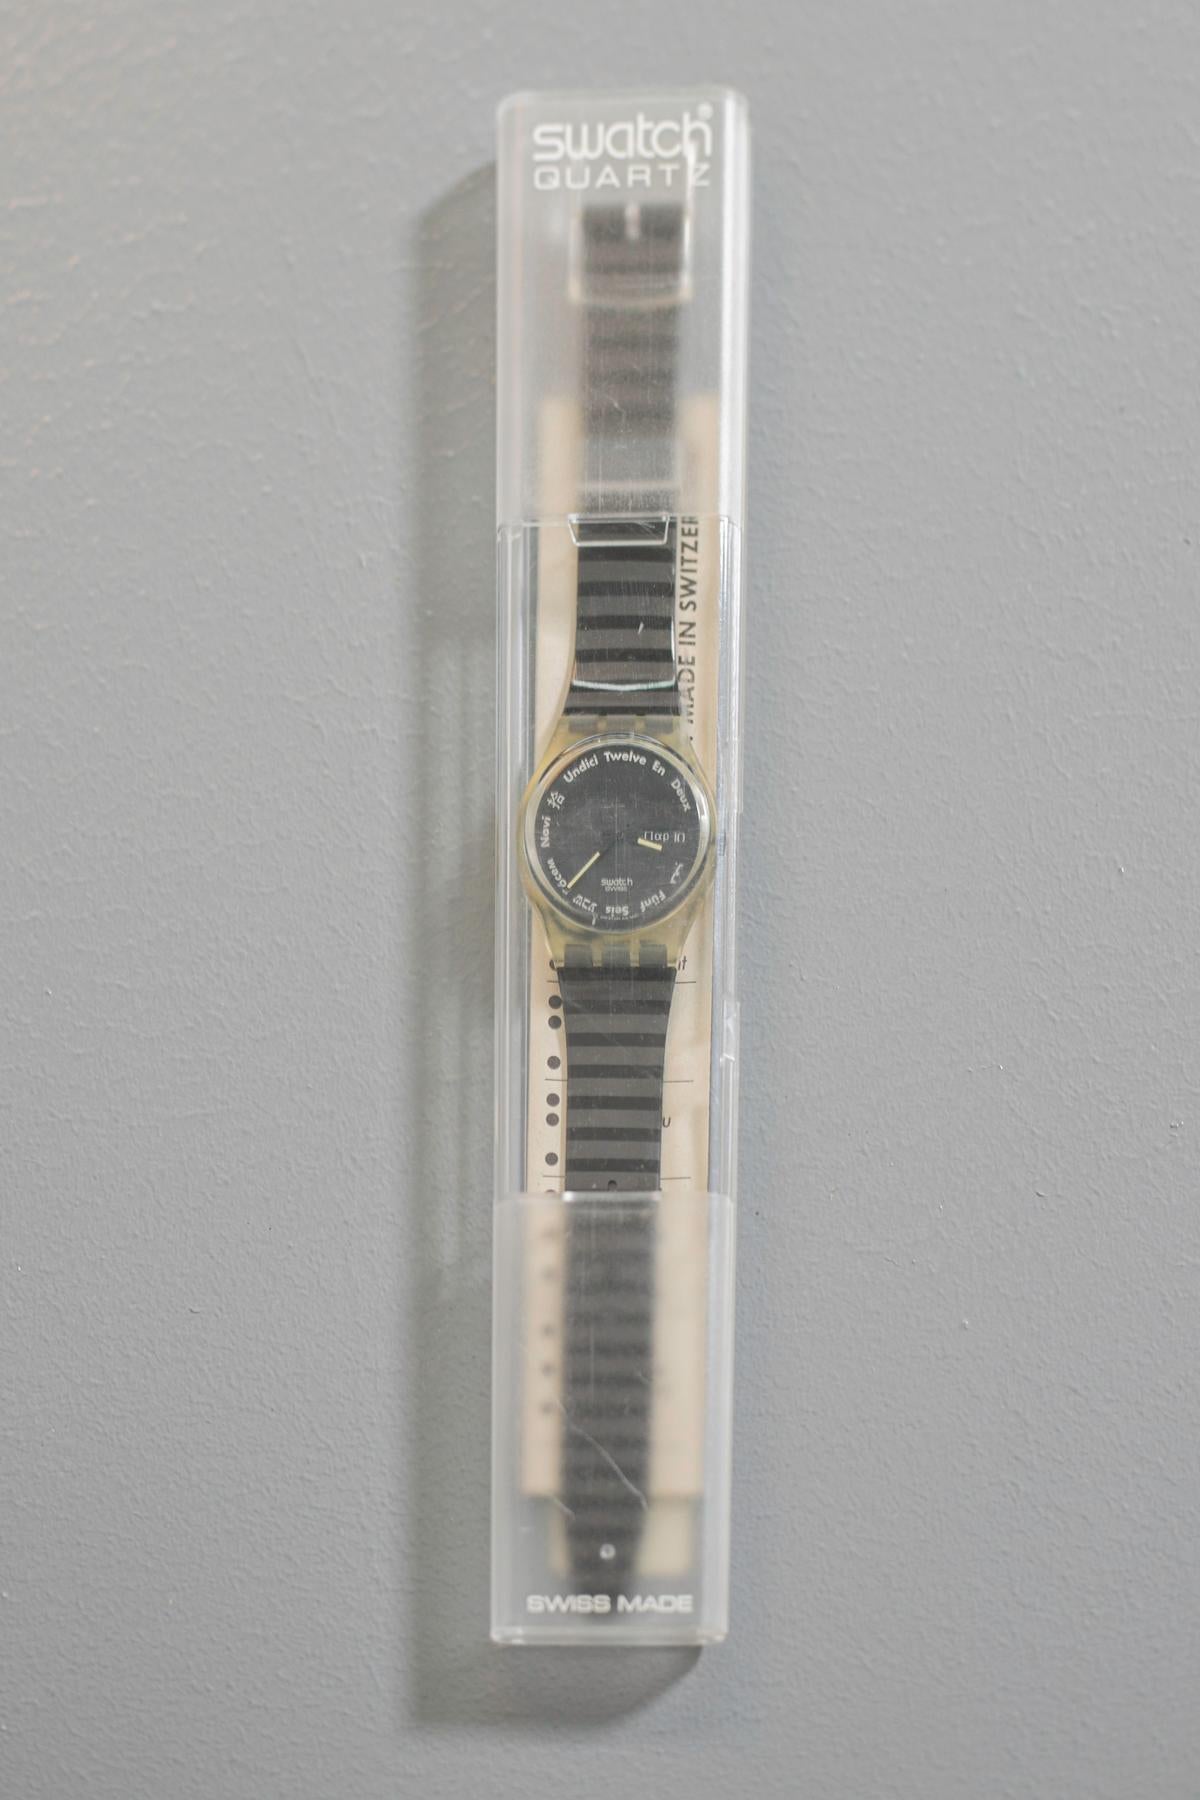 Montre Swatch vintage de la collection 1992. Il s'agit d'une montre très classique et élégante, les couleurs du bracelet permettent de combiner cette pièce avec une tenue élégante de jour comme de soirée. À l'intérieur du cadran se trouvent des